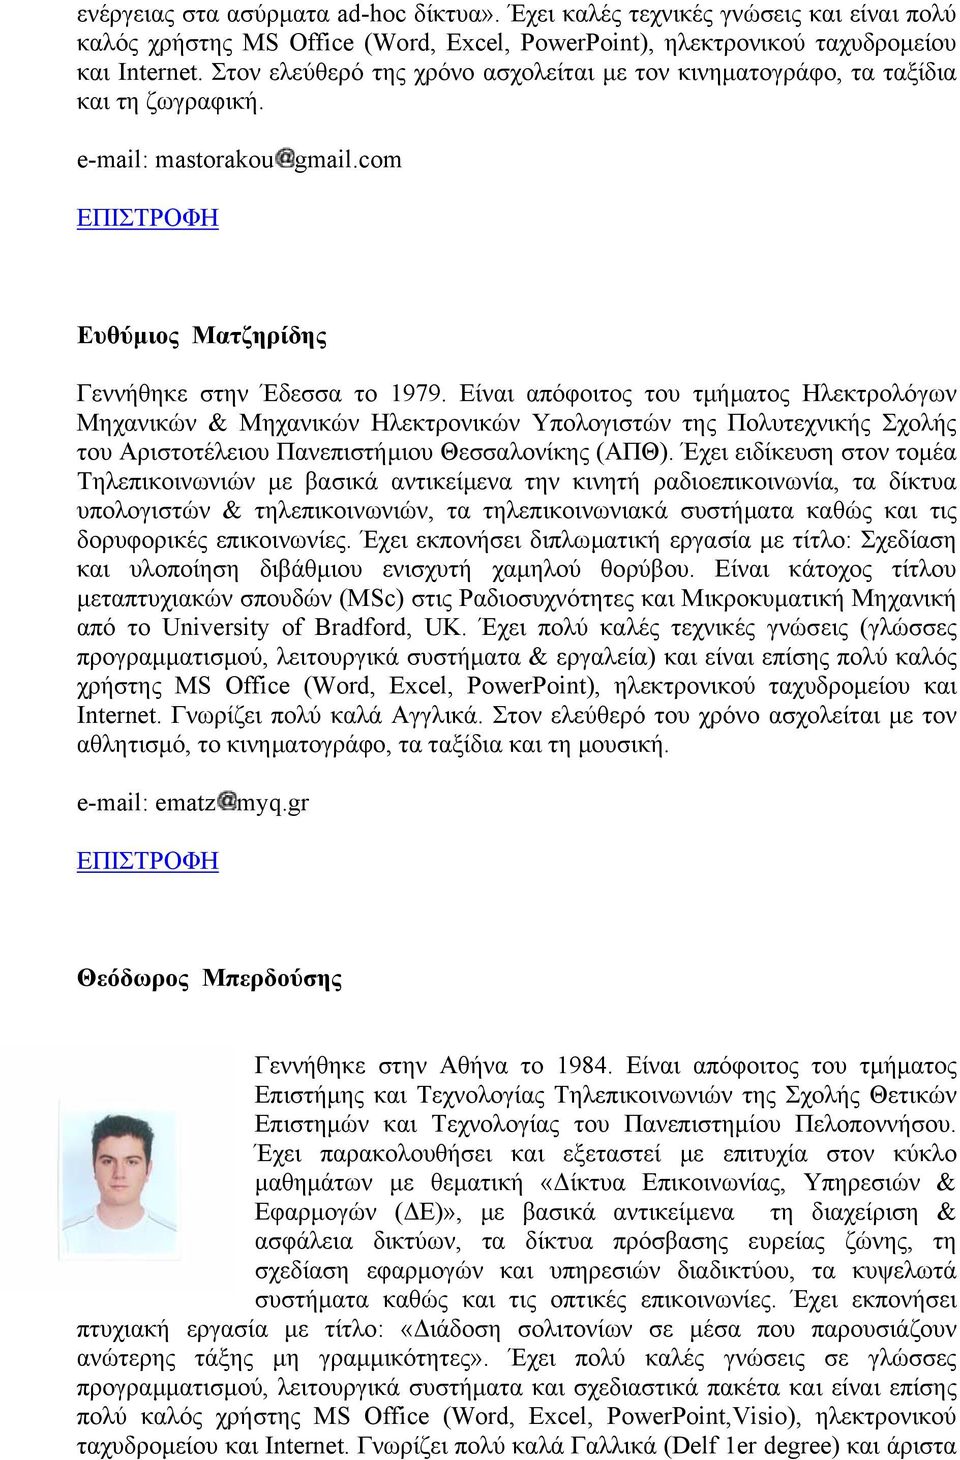 Είναι απόφοιτος του τµήµατος Ηλεκτρολόγων Μηχανικών & Μηχανικών Ηλεκτρονικών Υπολογιστών της Πολυτεχνικής Σχολής του Αριστοτέλειου Πανεπιστήµιου Θεσσαλονίκης (ΑΠΘ).